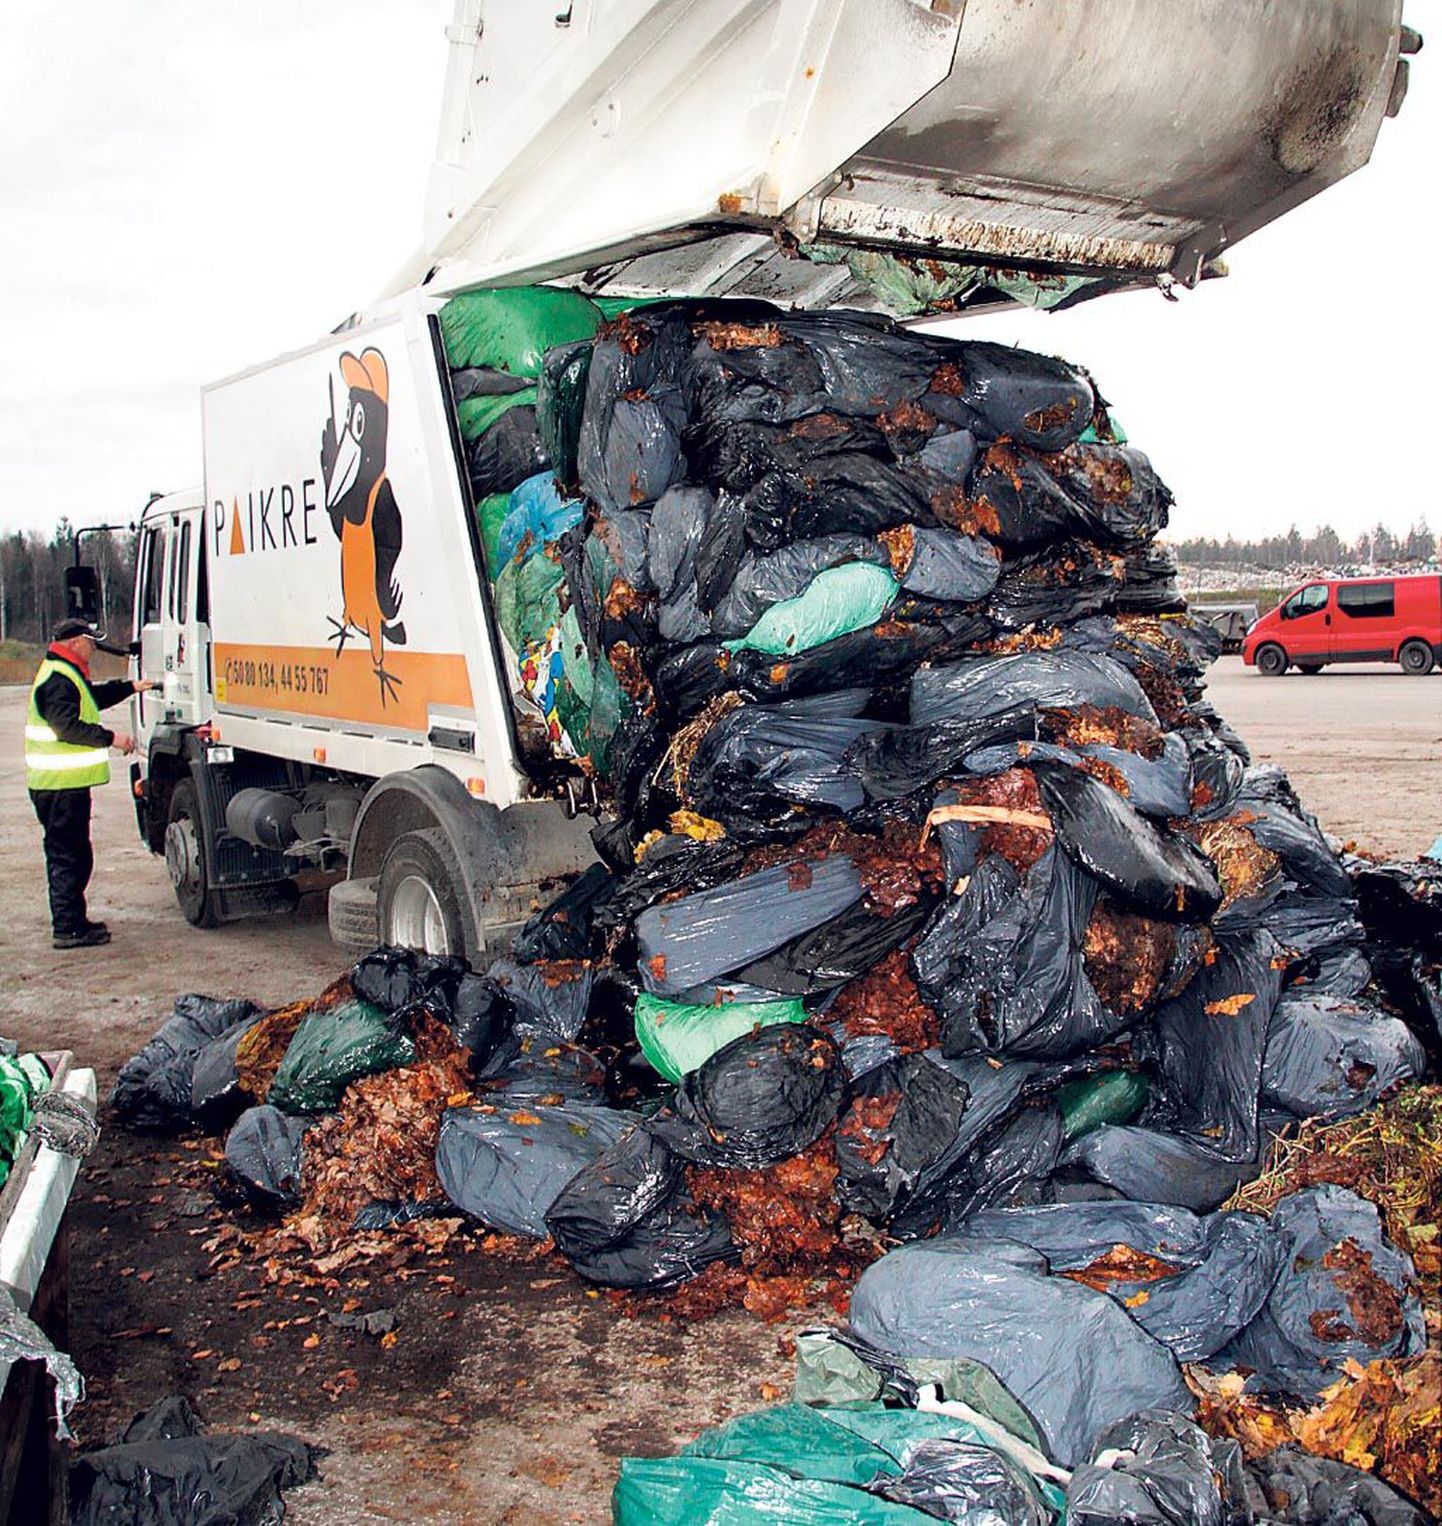 Tänu linna sekkumisele jõudis Paikresse kompostimisele hulk kilekottidesse pakendatud lehti, mille äraveo eest tulnuks pärast 1. novembrit täiendavalt maksta.